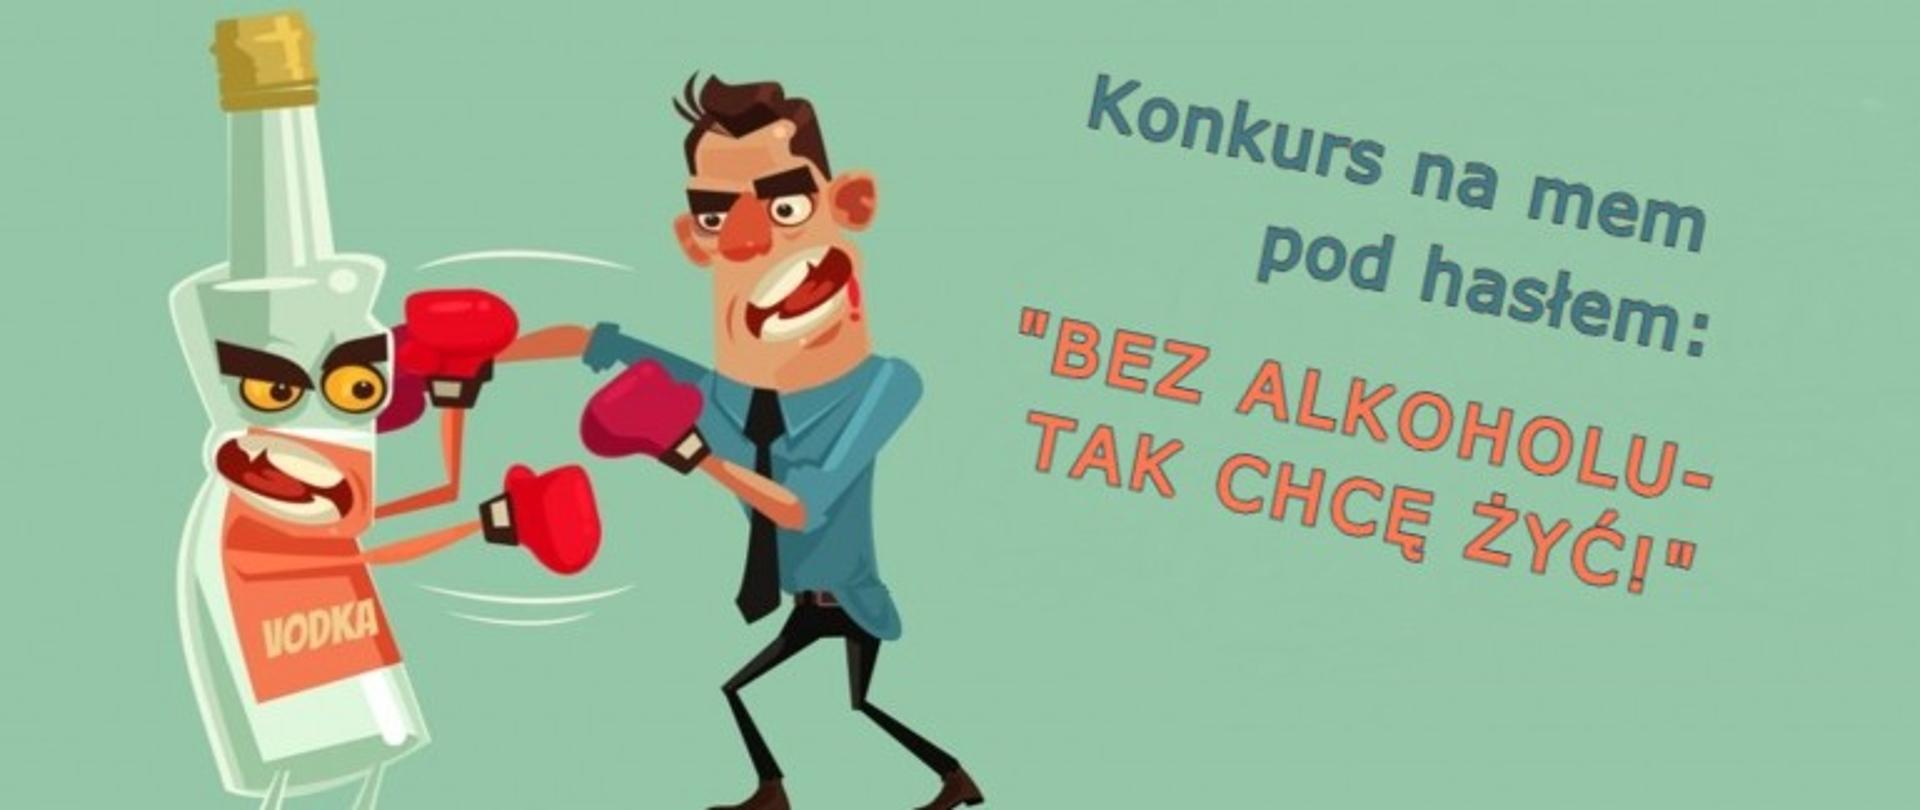 Plakat konkurs na mem pod hasłem: ""BEZ ALKOHOLU - TAK CHCĘ ŻYĆ!"